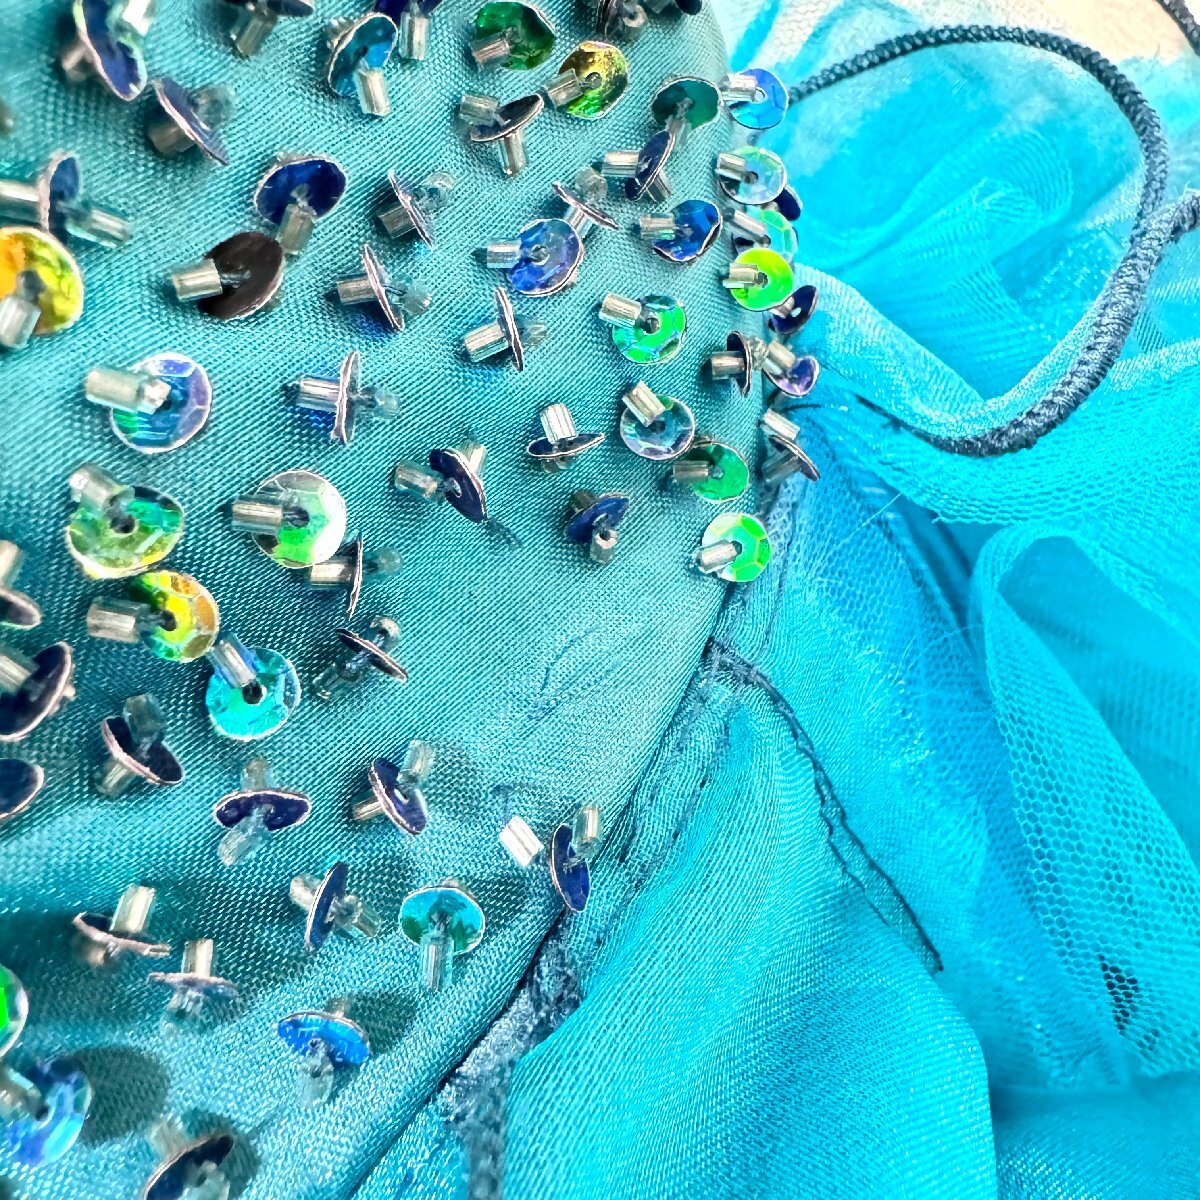 RAINBOW ターコイズブルー 緑色 青色 カラードレス パーティドレス 貸衣装 ブライダル 結婚式 披露宴 衣装 舞台発表 コスプレ 刺繍_画像6